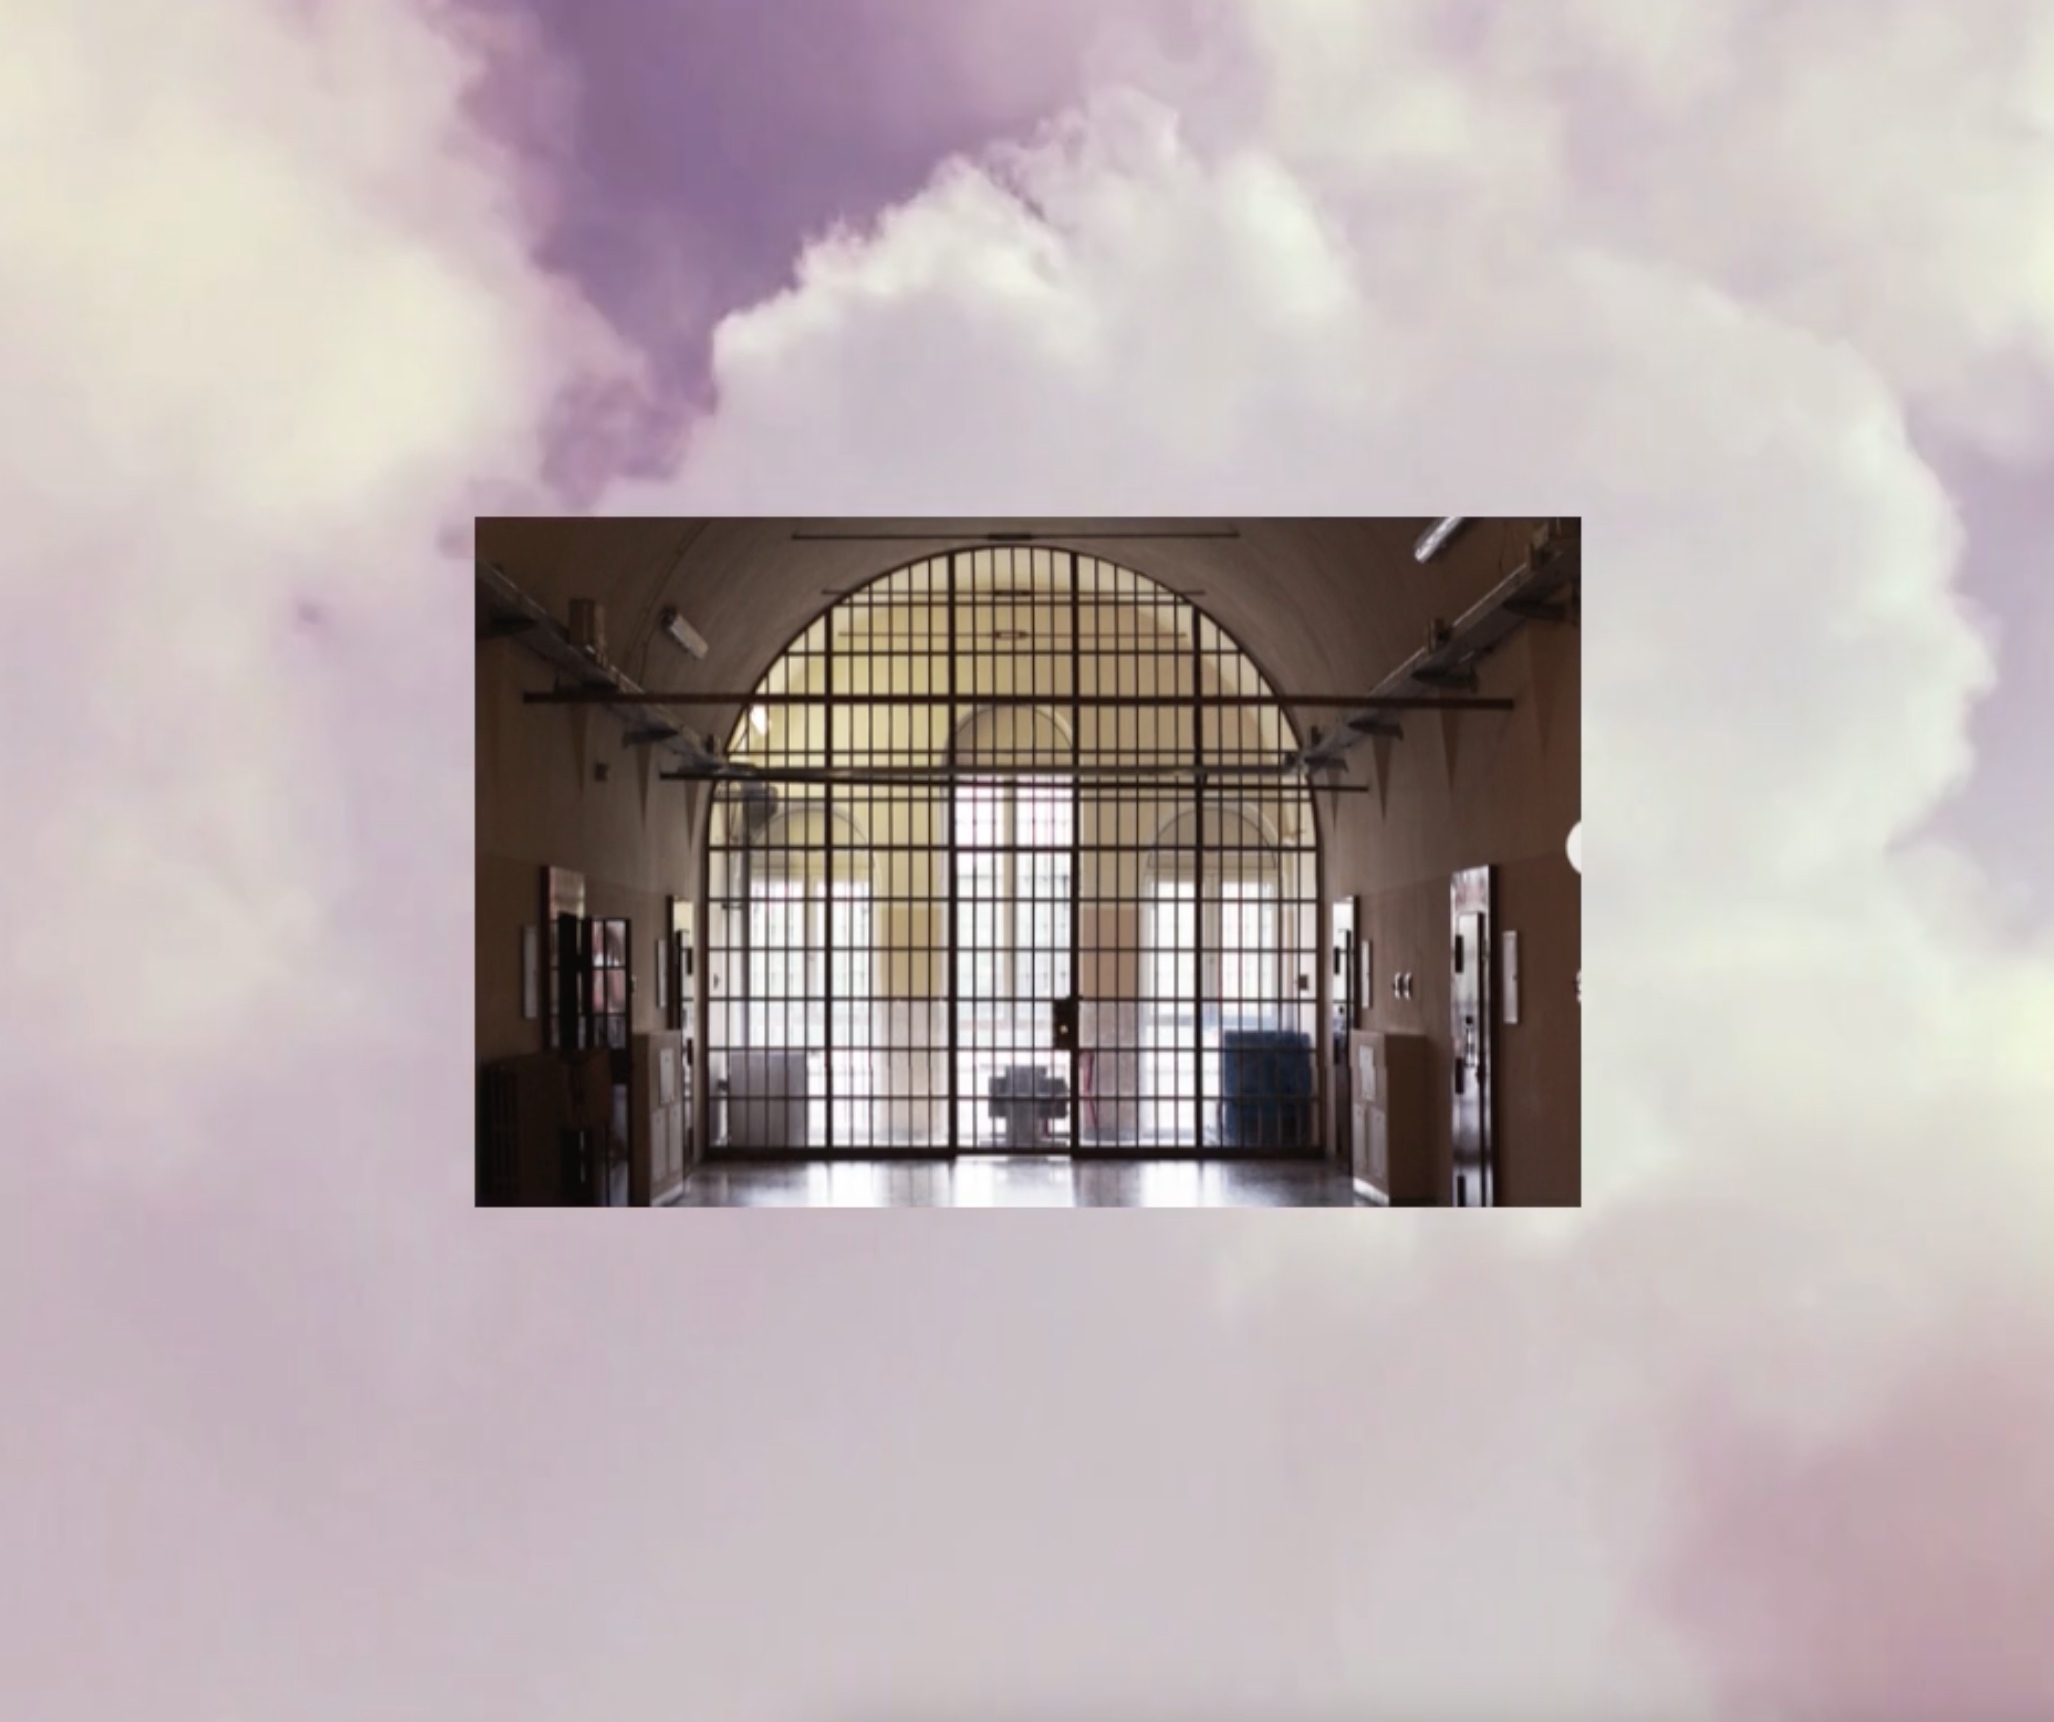 sullo sfondo un cielo nuvoloso, in primo piano una foto dall'interno del carcere